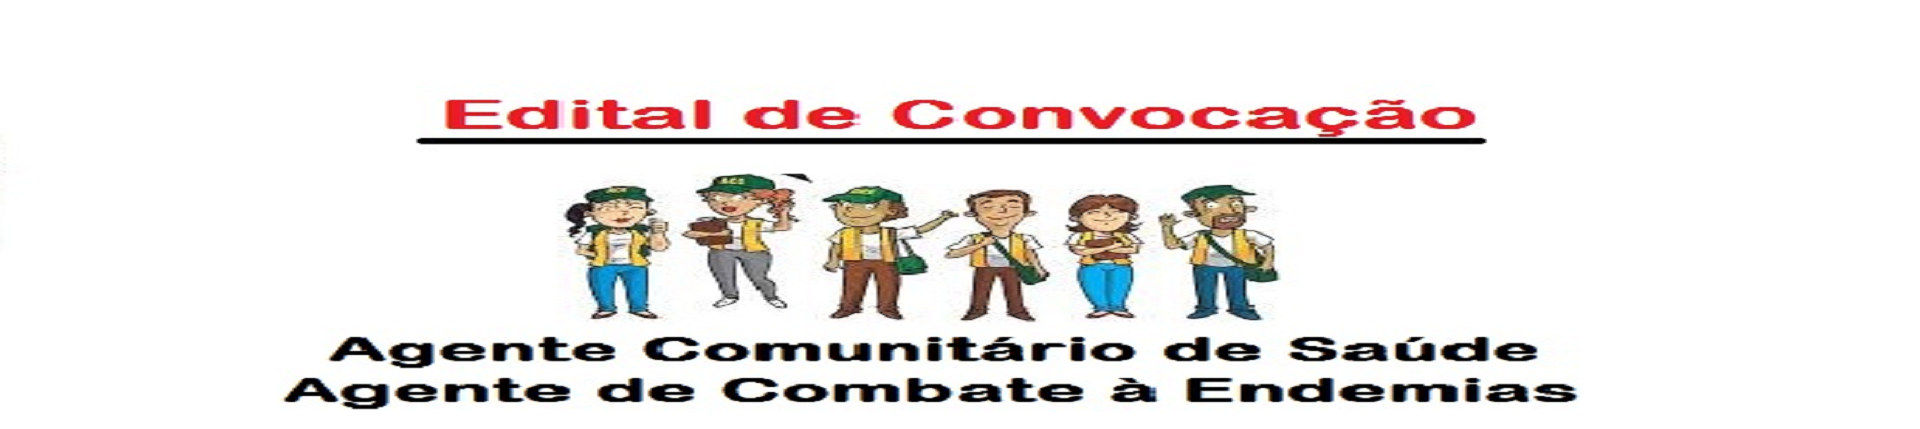 EDITAL DE CONVOCAÇÃO Nº 001/2021 -  PROCESSO SELETIVO N° 001/2021 -  Agentes Comunitários de Saúde e Agentes de Combate a Endemias.